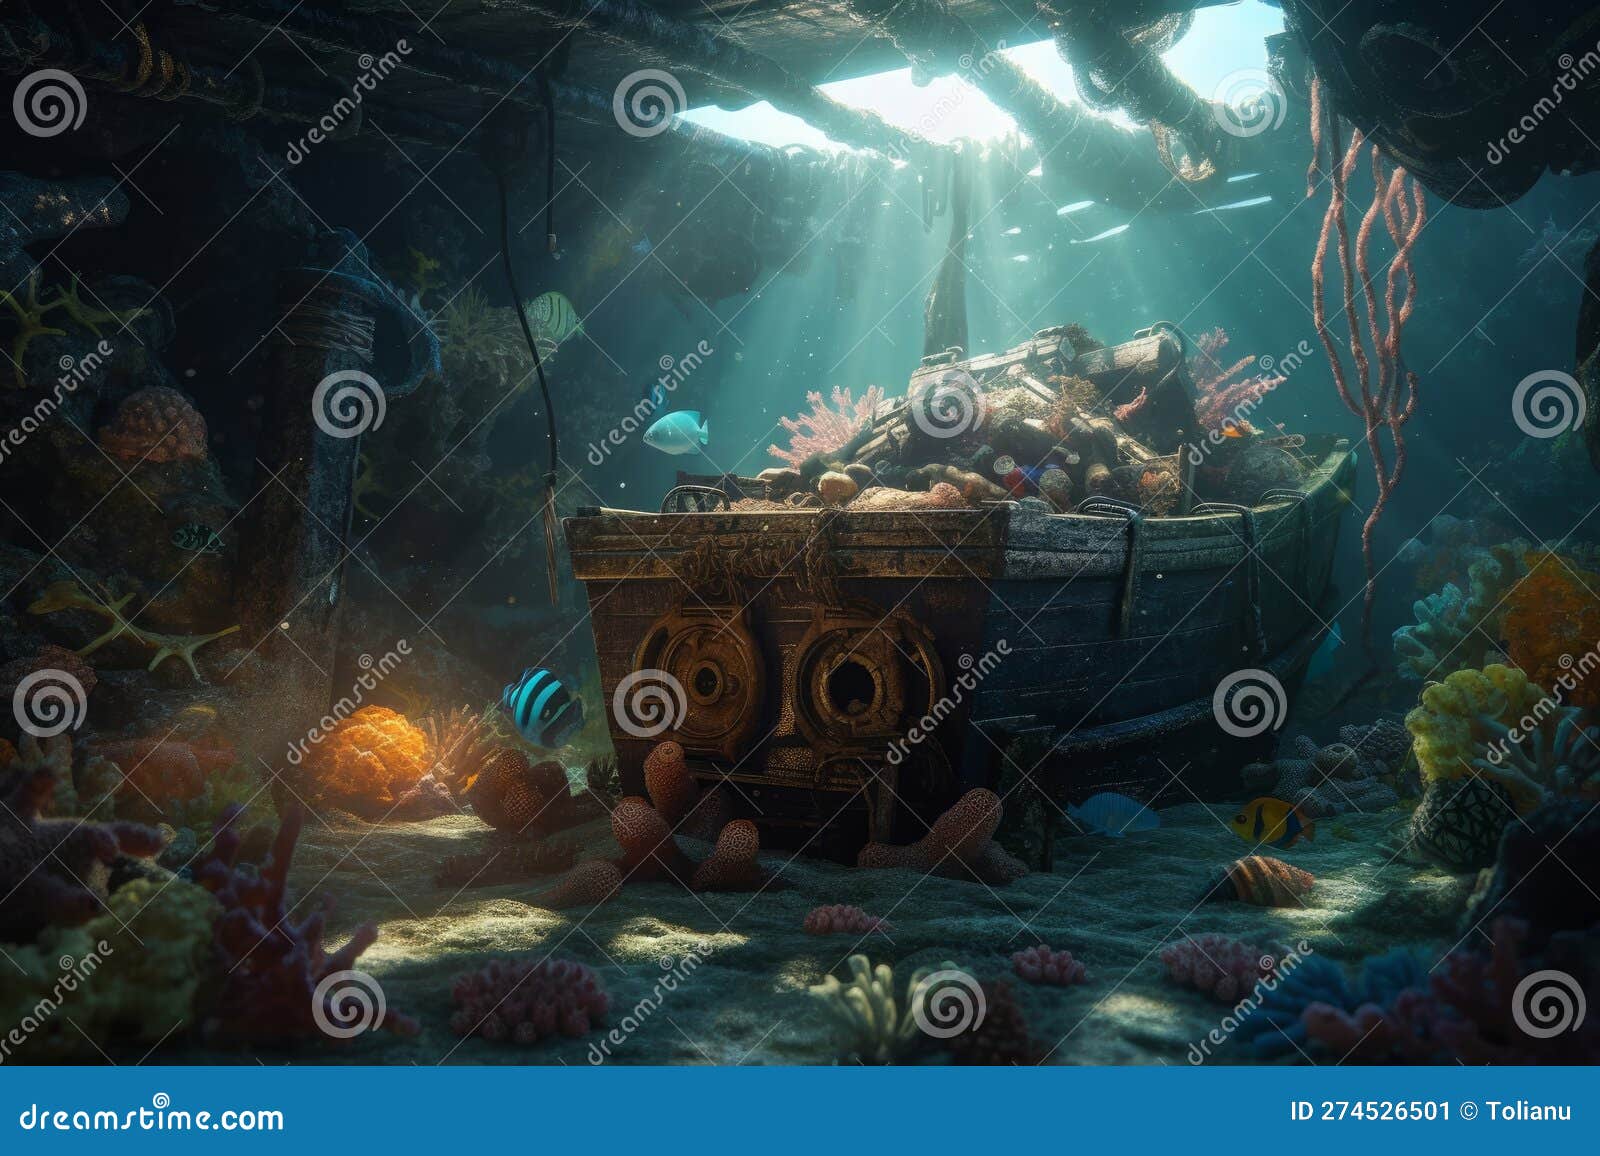 Underwater Adventure: Sunken Ship, Octopus, Treasure and Coral in